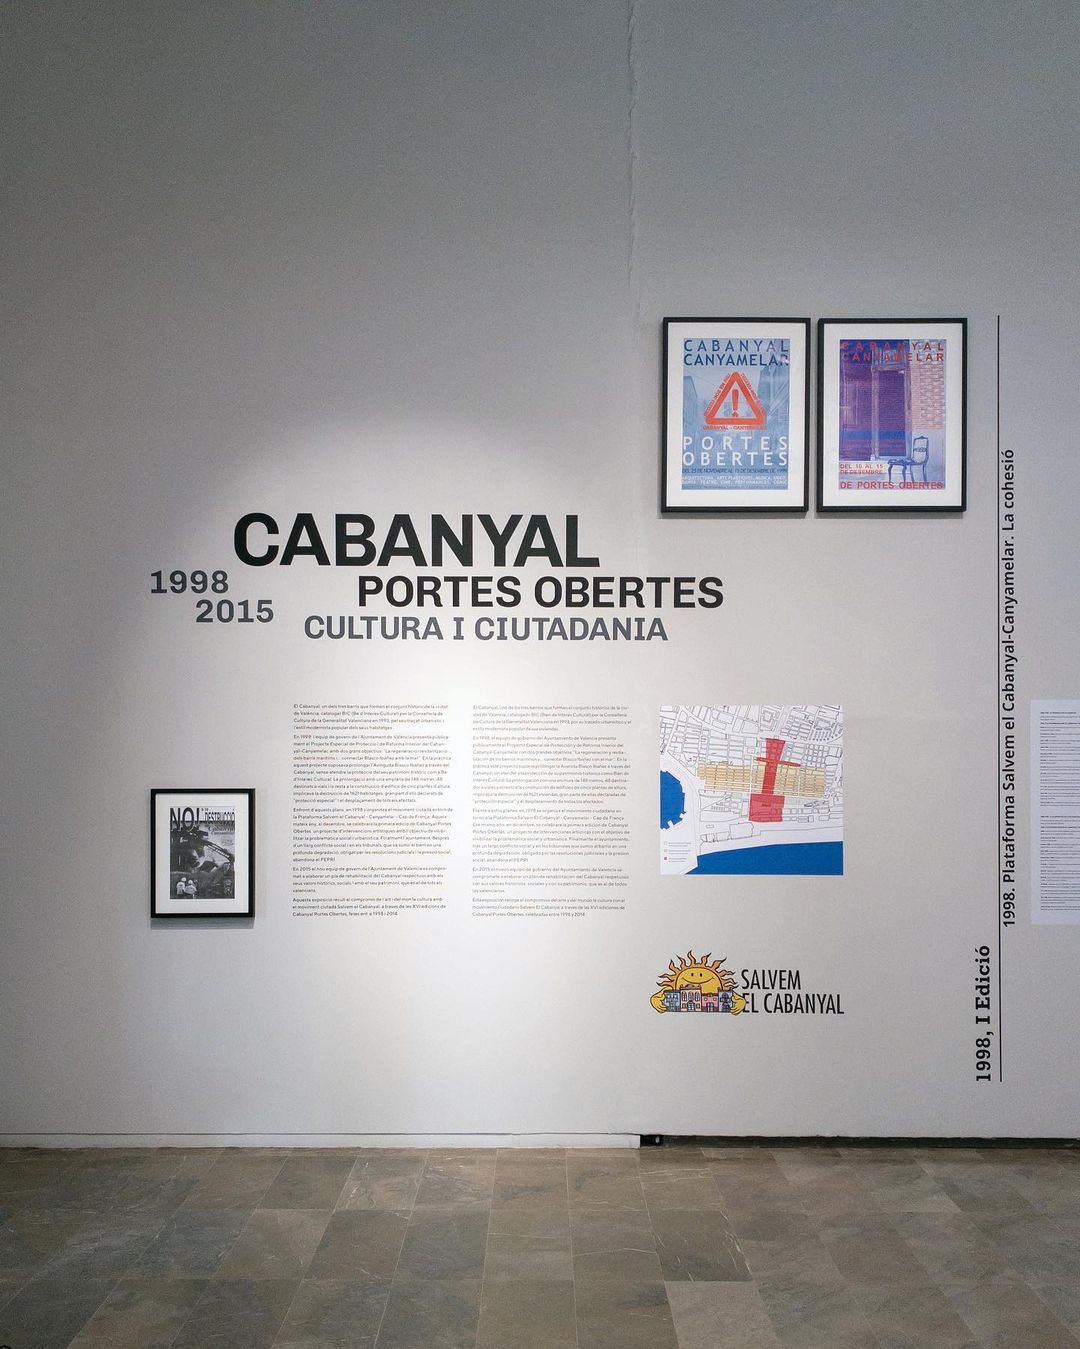 1998-2015 CABANYAL PORTES OBERTES. CULTURA I CIUTADANIA. Centre Del Carme. Estudio Paco Mora.